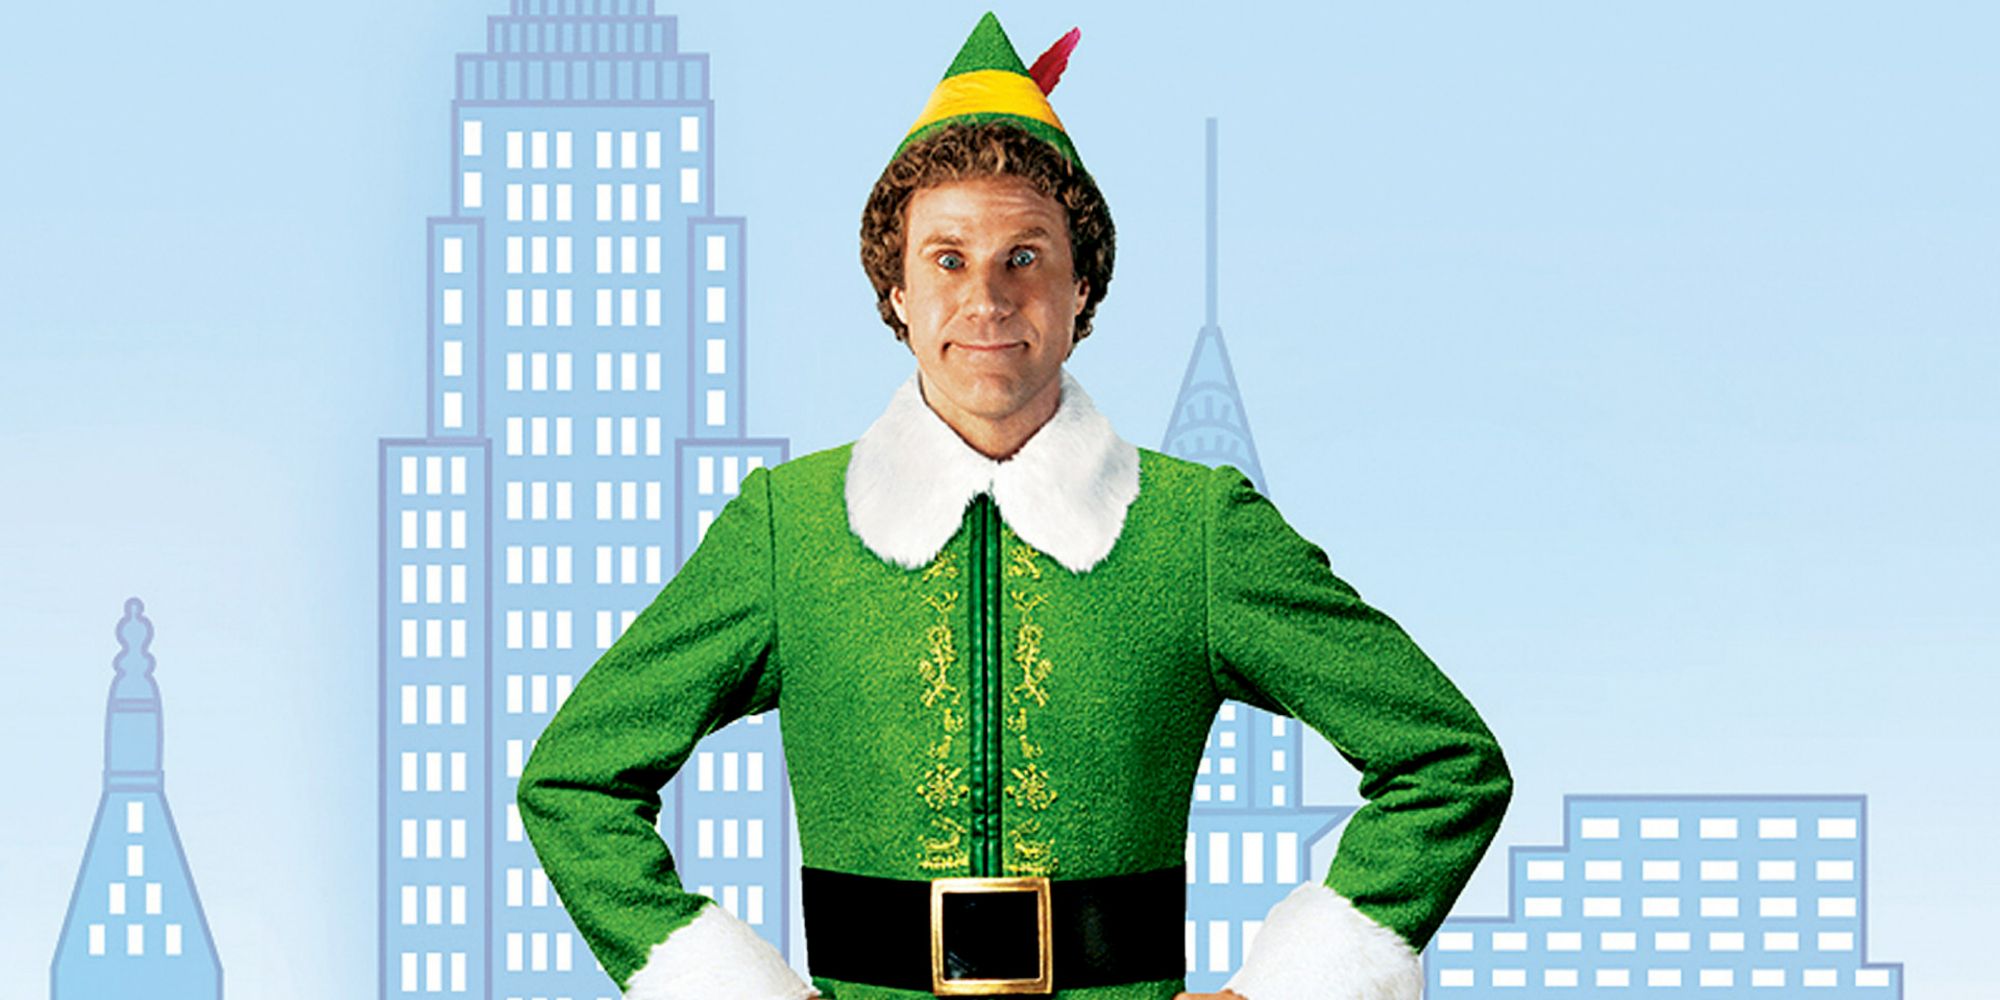 Will Ferrell as Buddy in Elf.